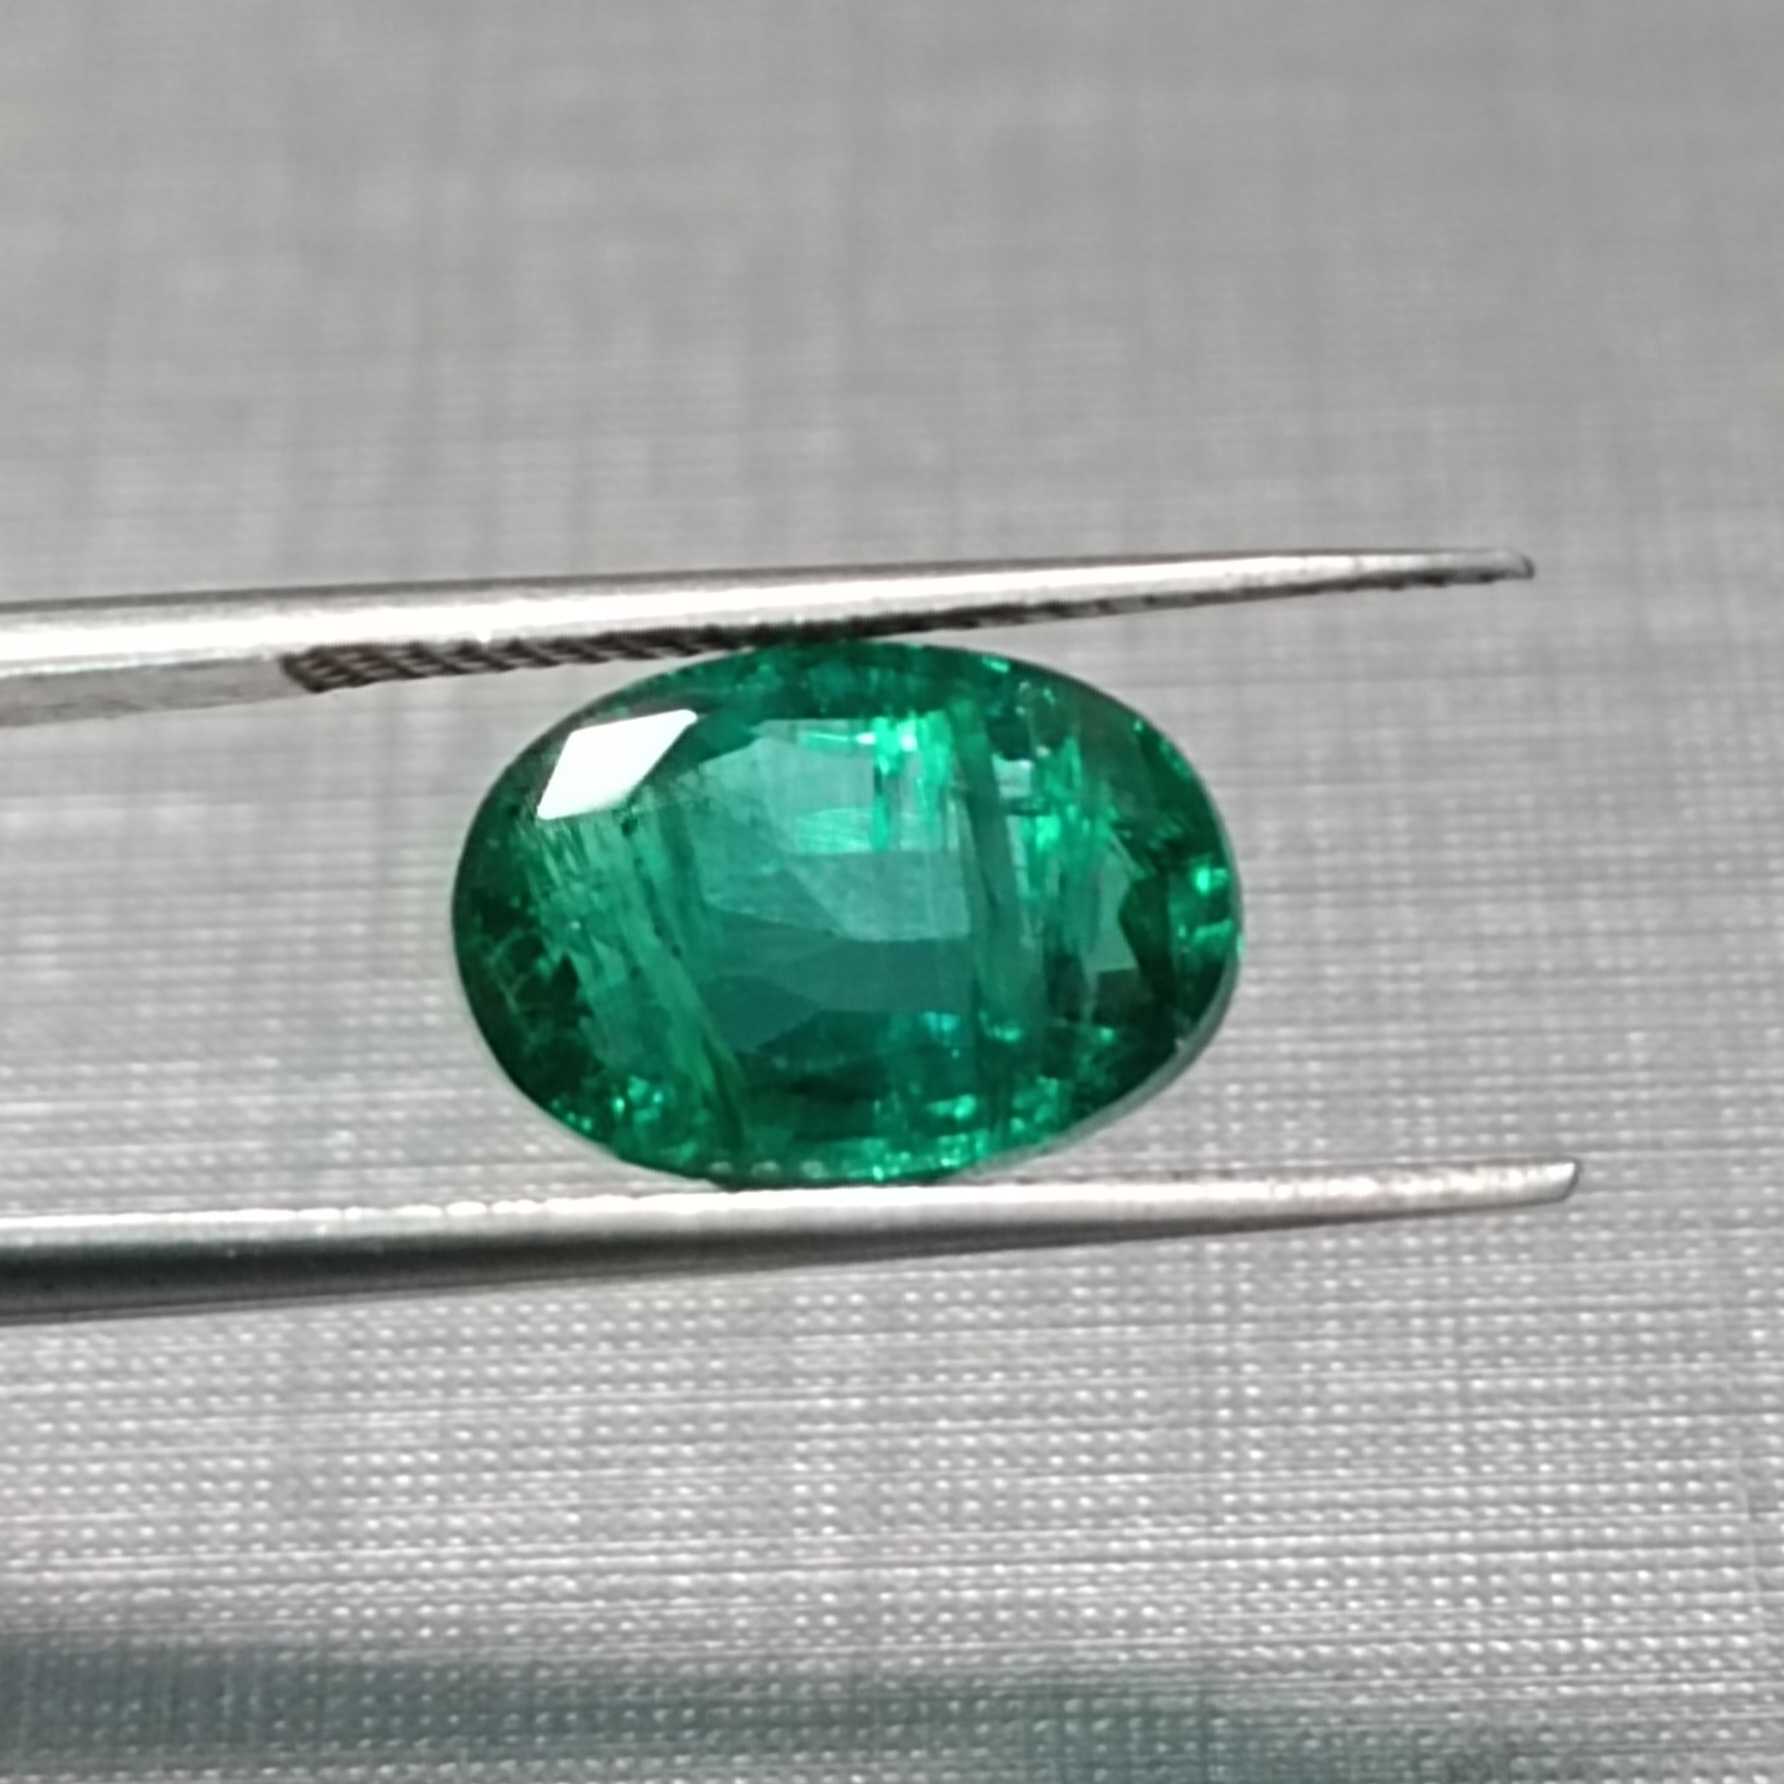 3.03ct Oval Cut Deep Vivid Green Color Emerald